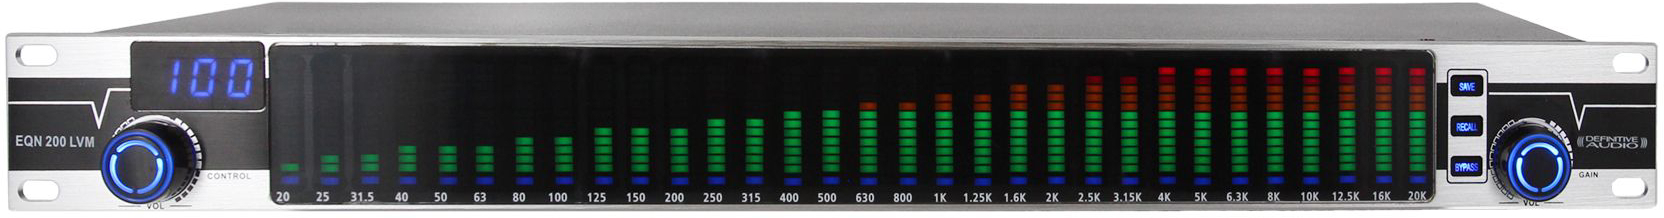 Definitive Audio Eqn 200 Lvm - Equaliseur / Channel Strip - Main picture